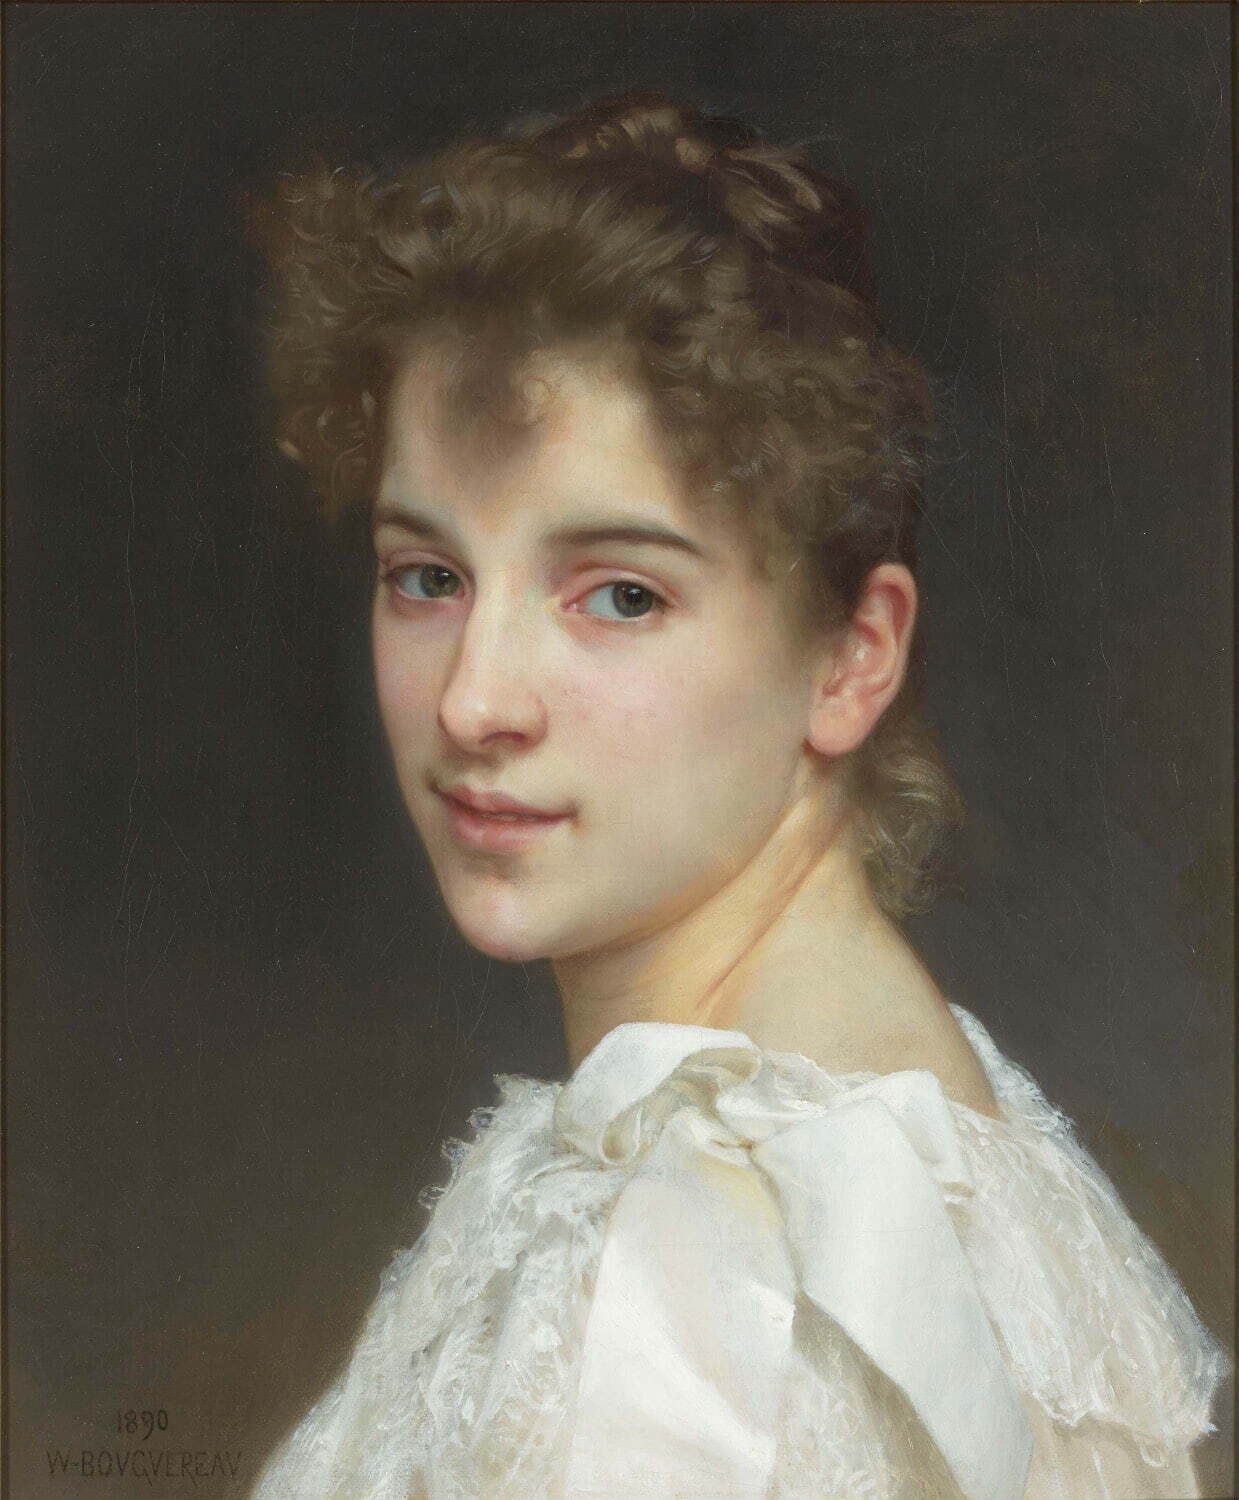 ウィリアム・アドルフ・ブーグロー 《ガブリエル・コットの肖像》 
1890年 油彩、カンヴァス 寄託作品